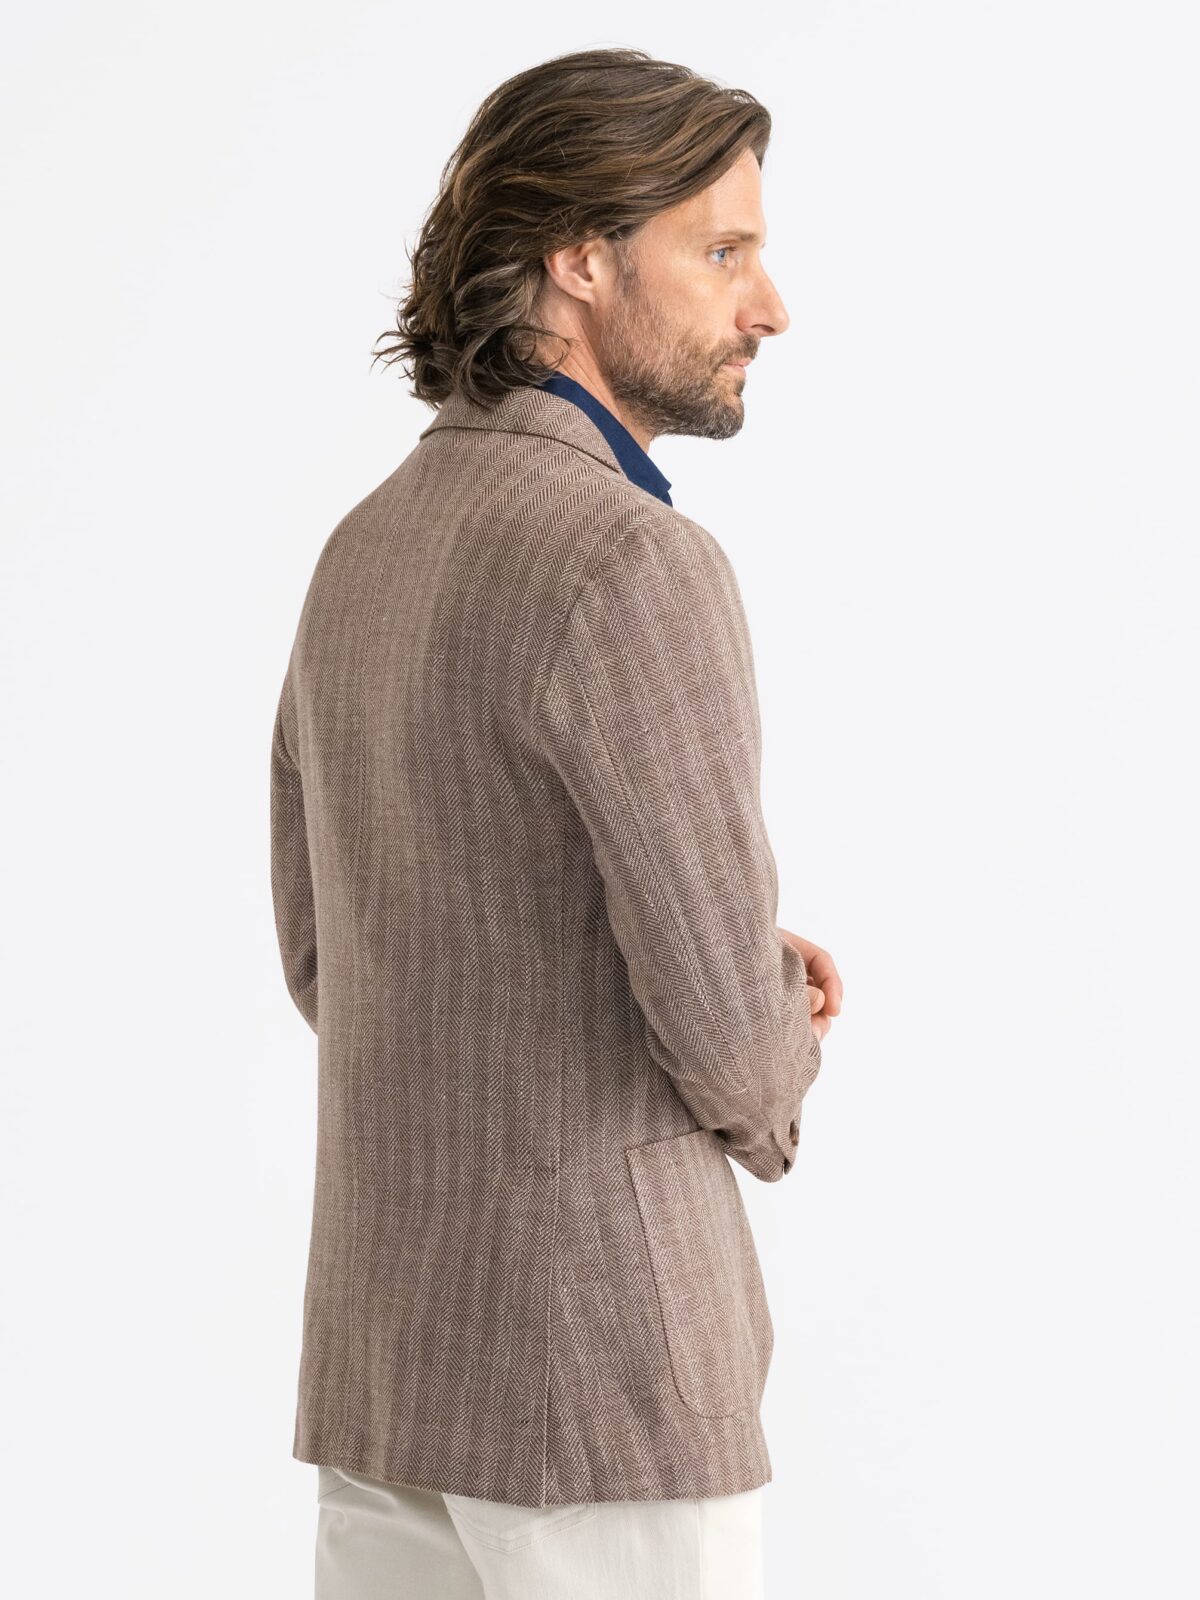 Brown Wool and Linen Herringbone Waverly Jacket - Custom Fit